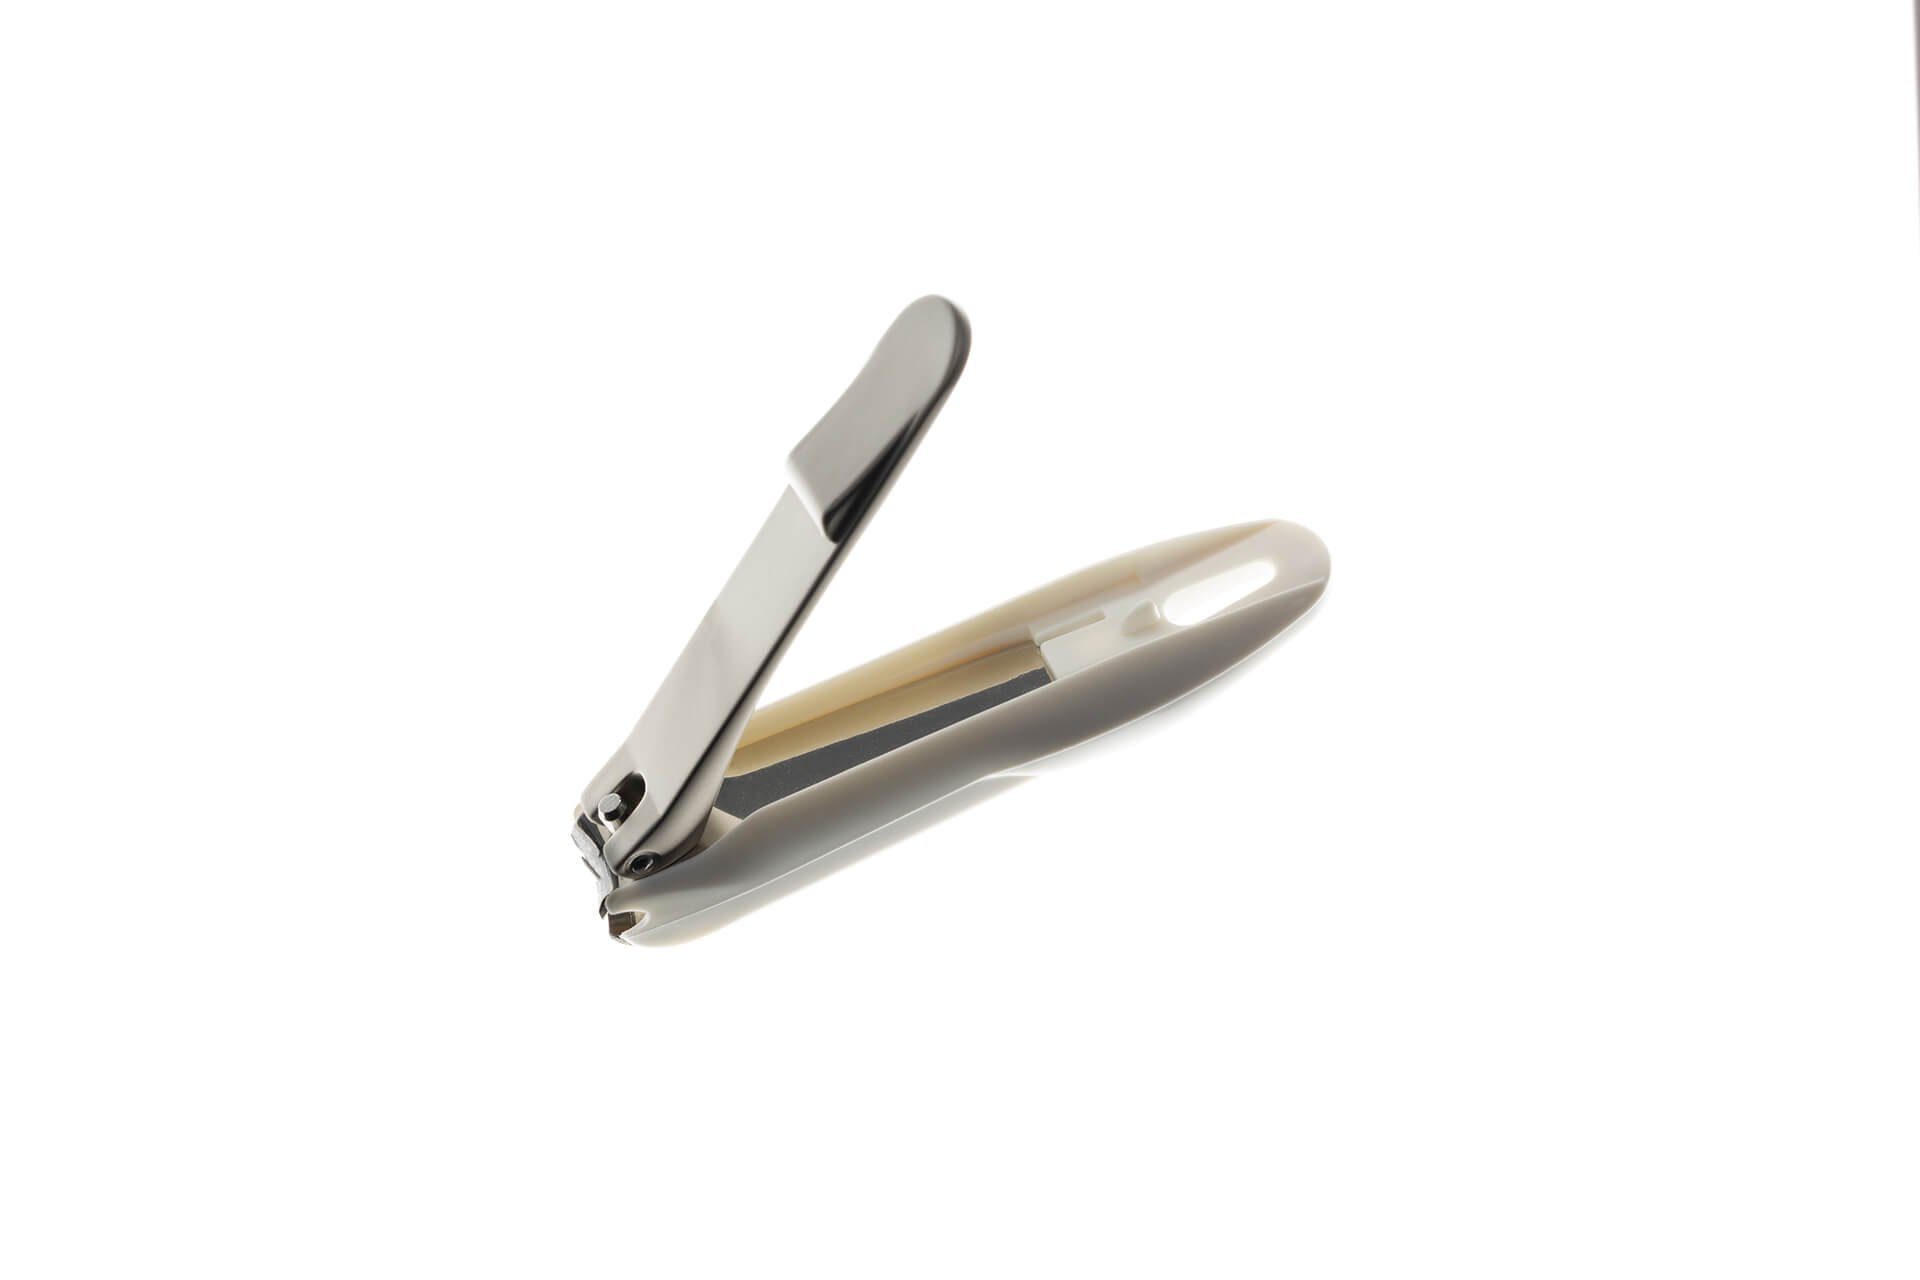 Auffangvorrichtung Nagelknipser Nagelknipser G-1200, Qualitätsprodukt Kleiner Seki Japan eingebauter aus EDGE mit handgeschärftes